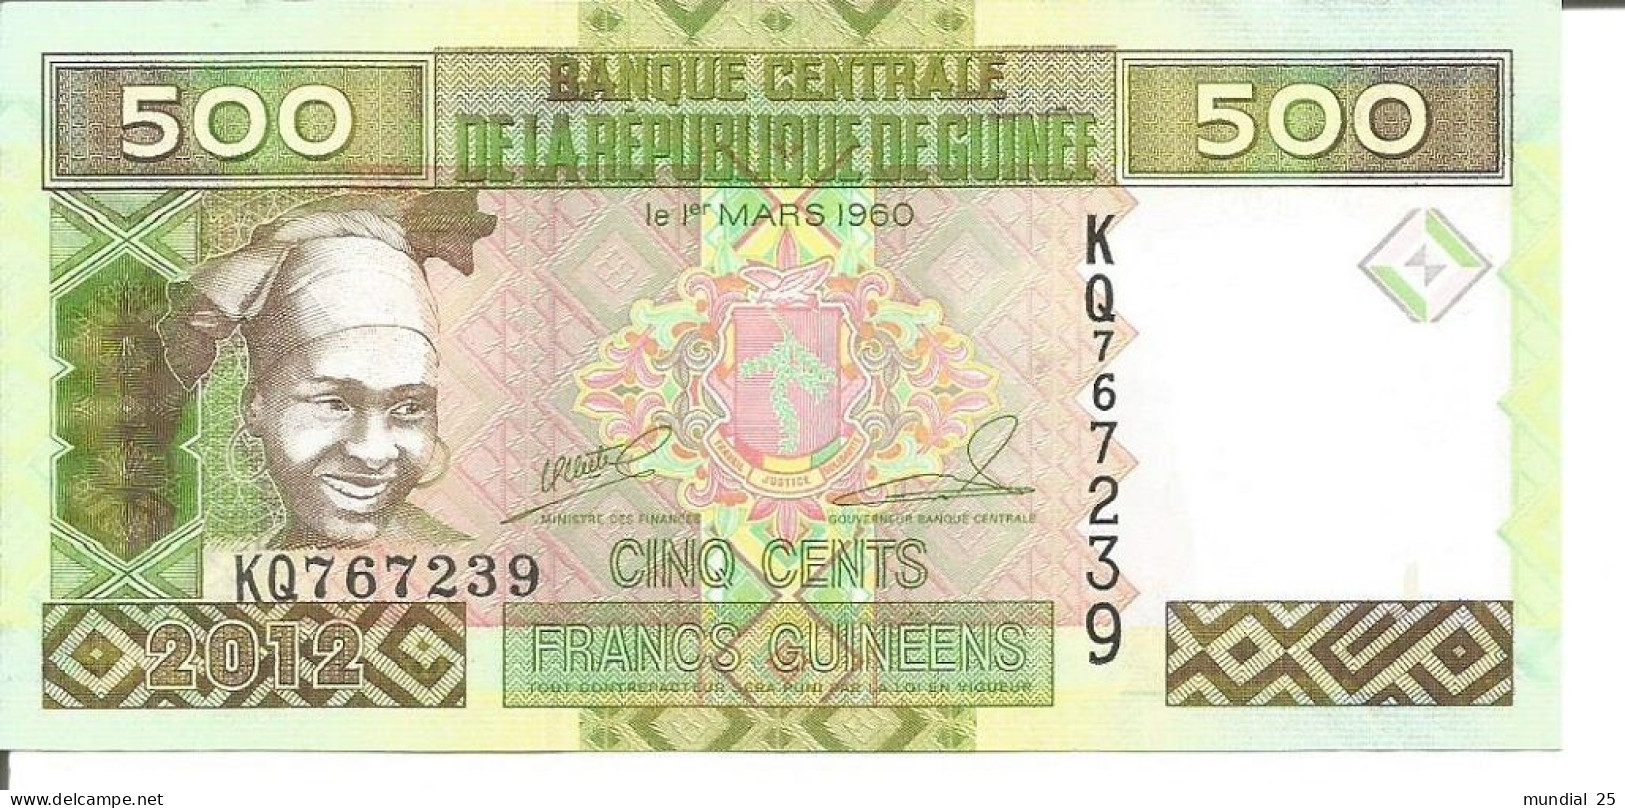 2 GUINEA NOTES 500 FRANCS GUINÉENS 2012 - Guinea